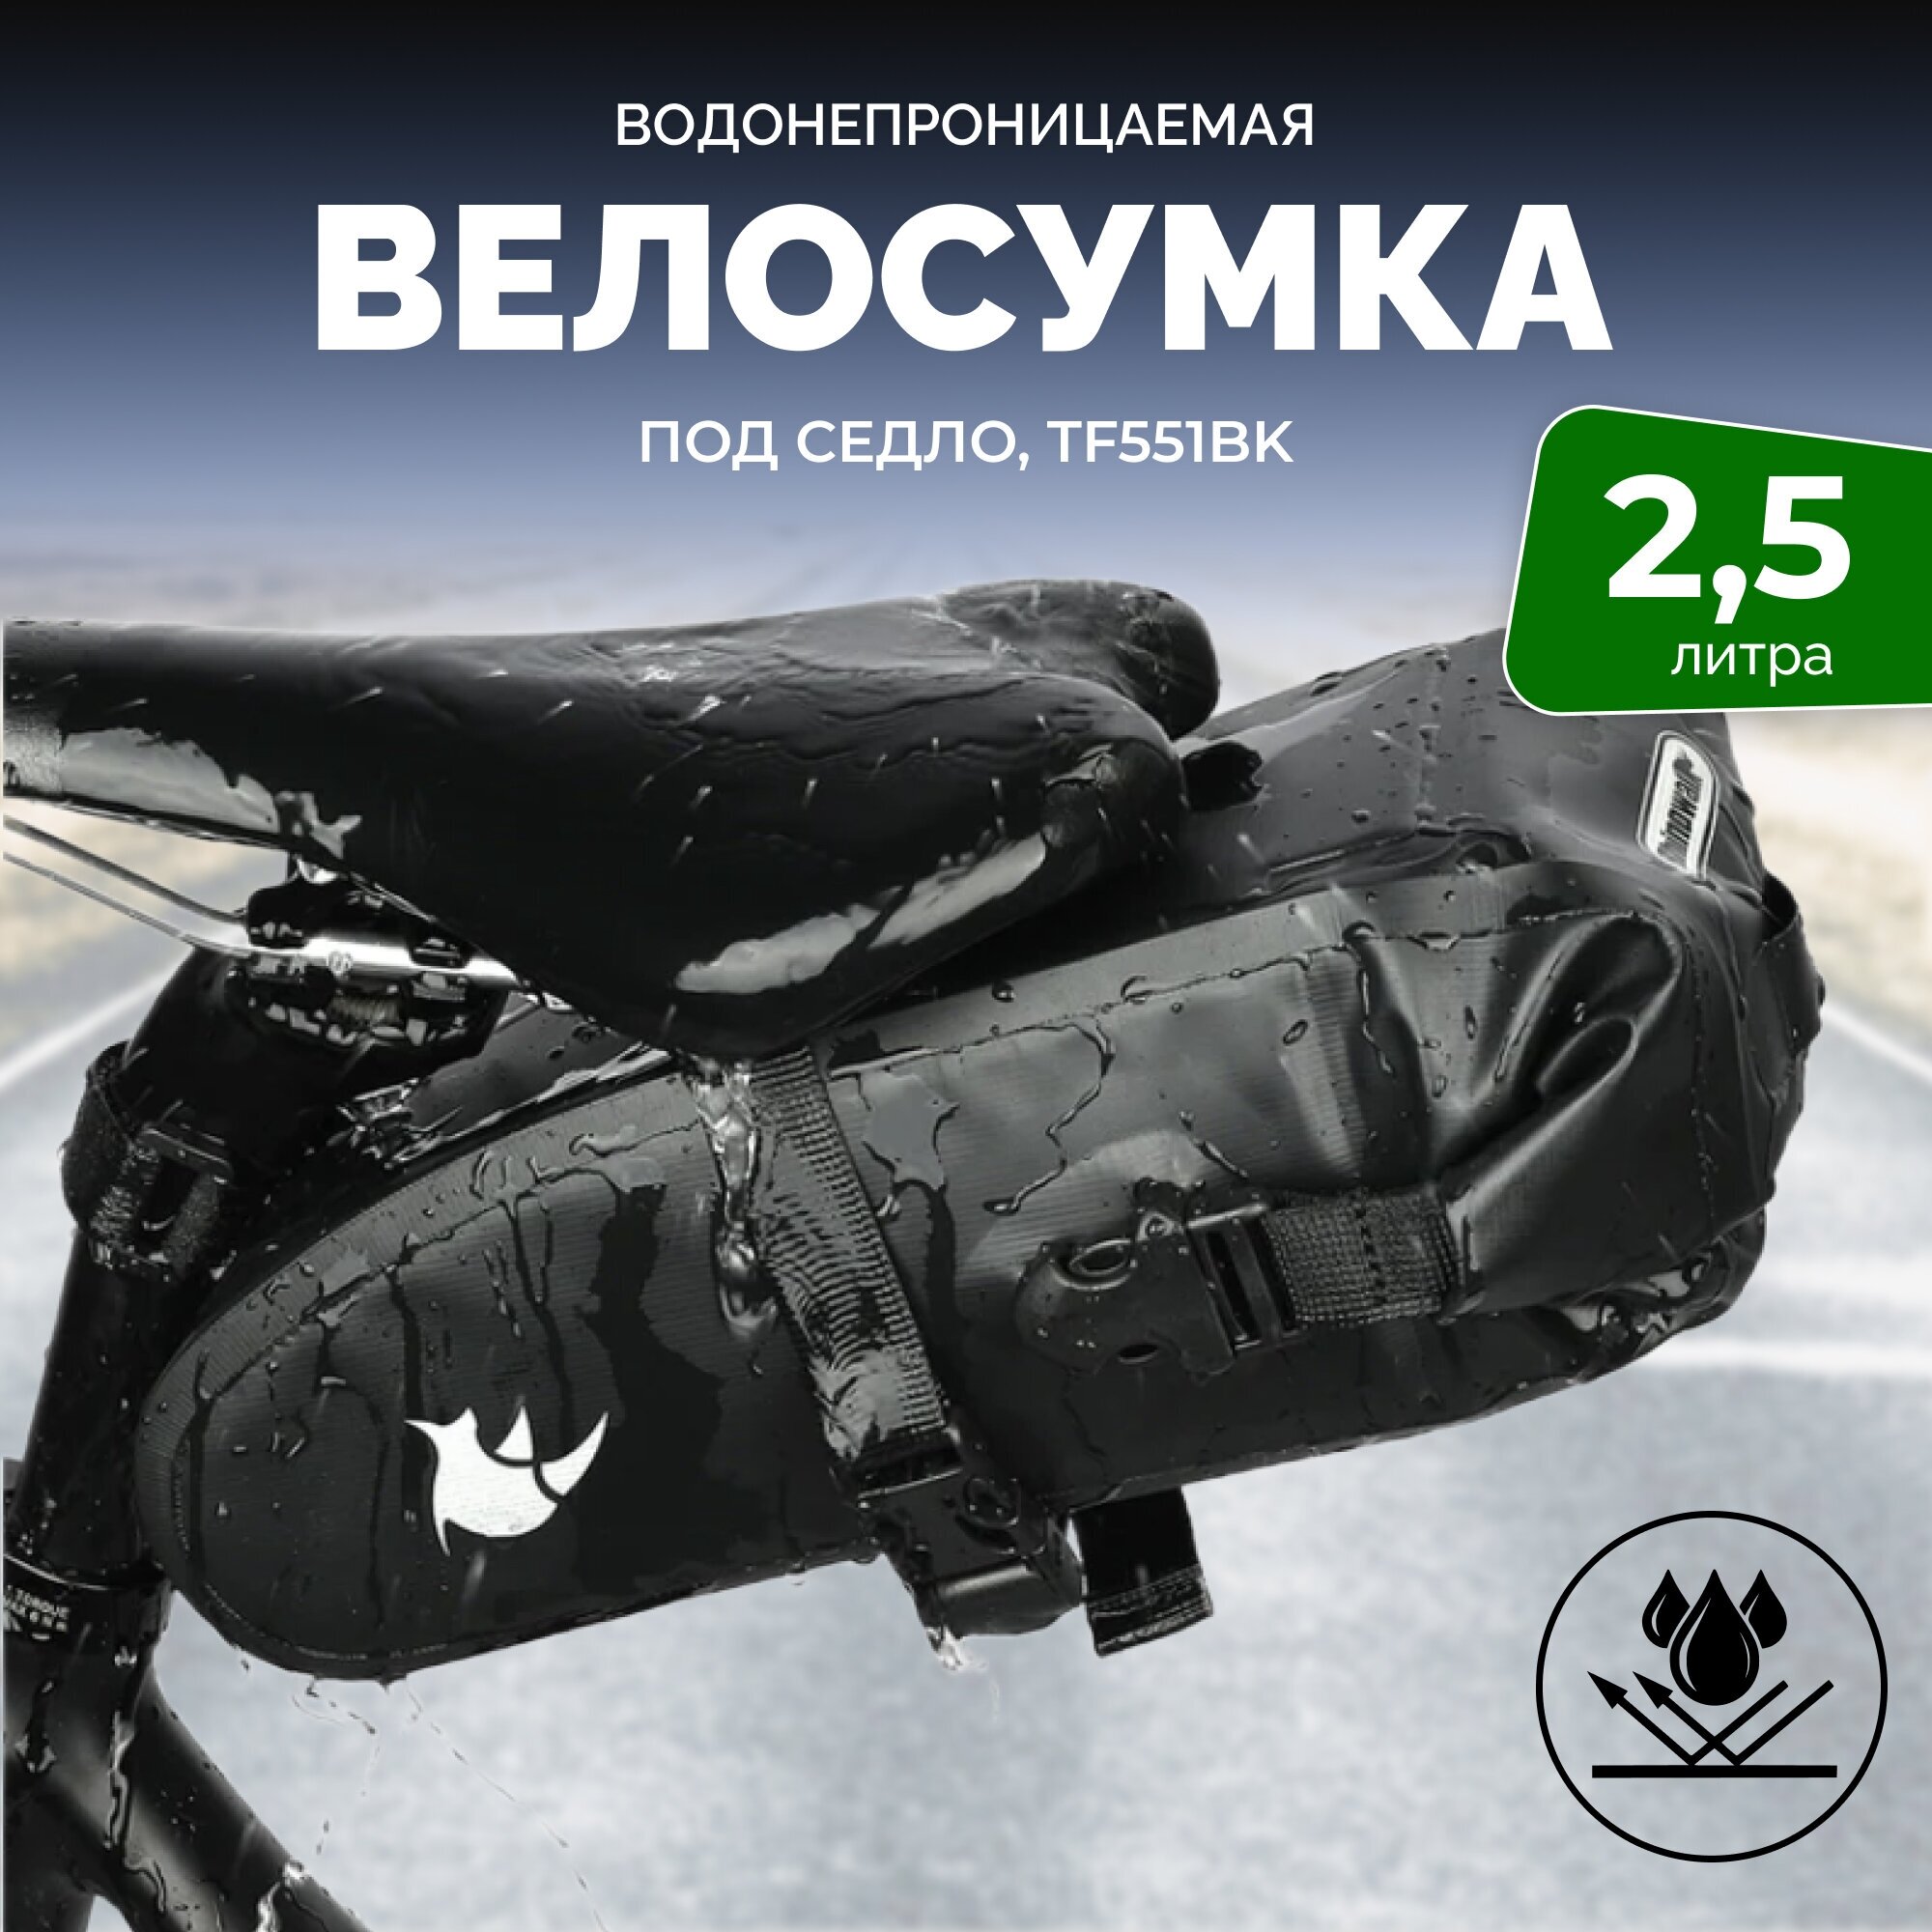 Велосипедная сумка Rhinowalk TF551 подседельная 2,5 л, полностью водонепроницаемая для велосипедного сиденья, mtb, дорожный ремонт,